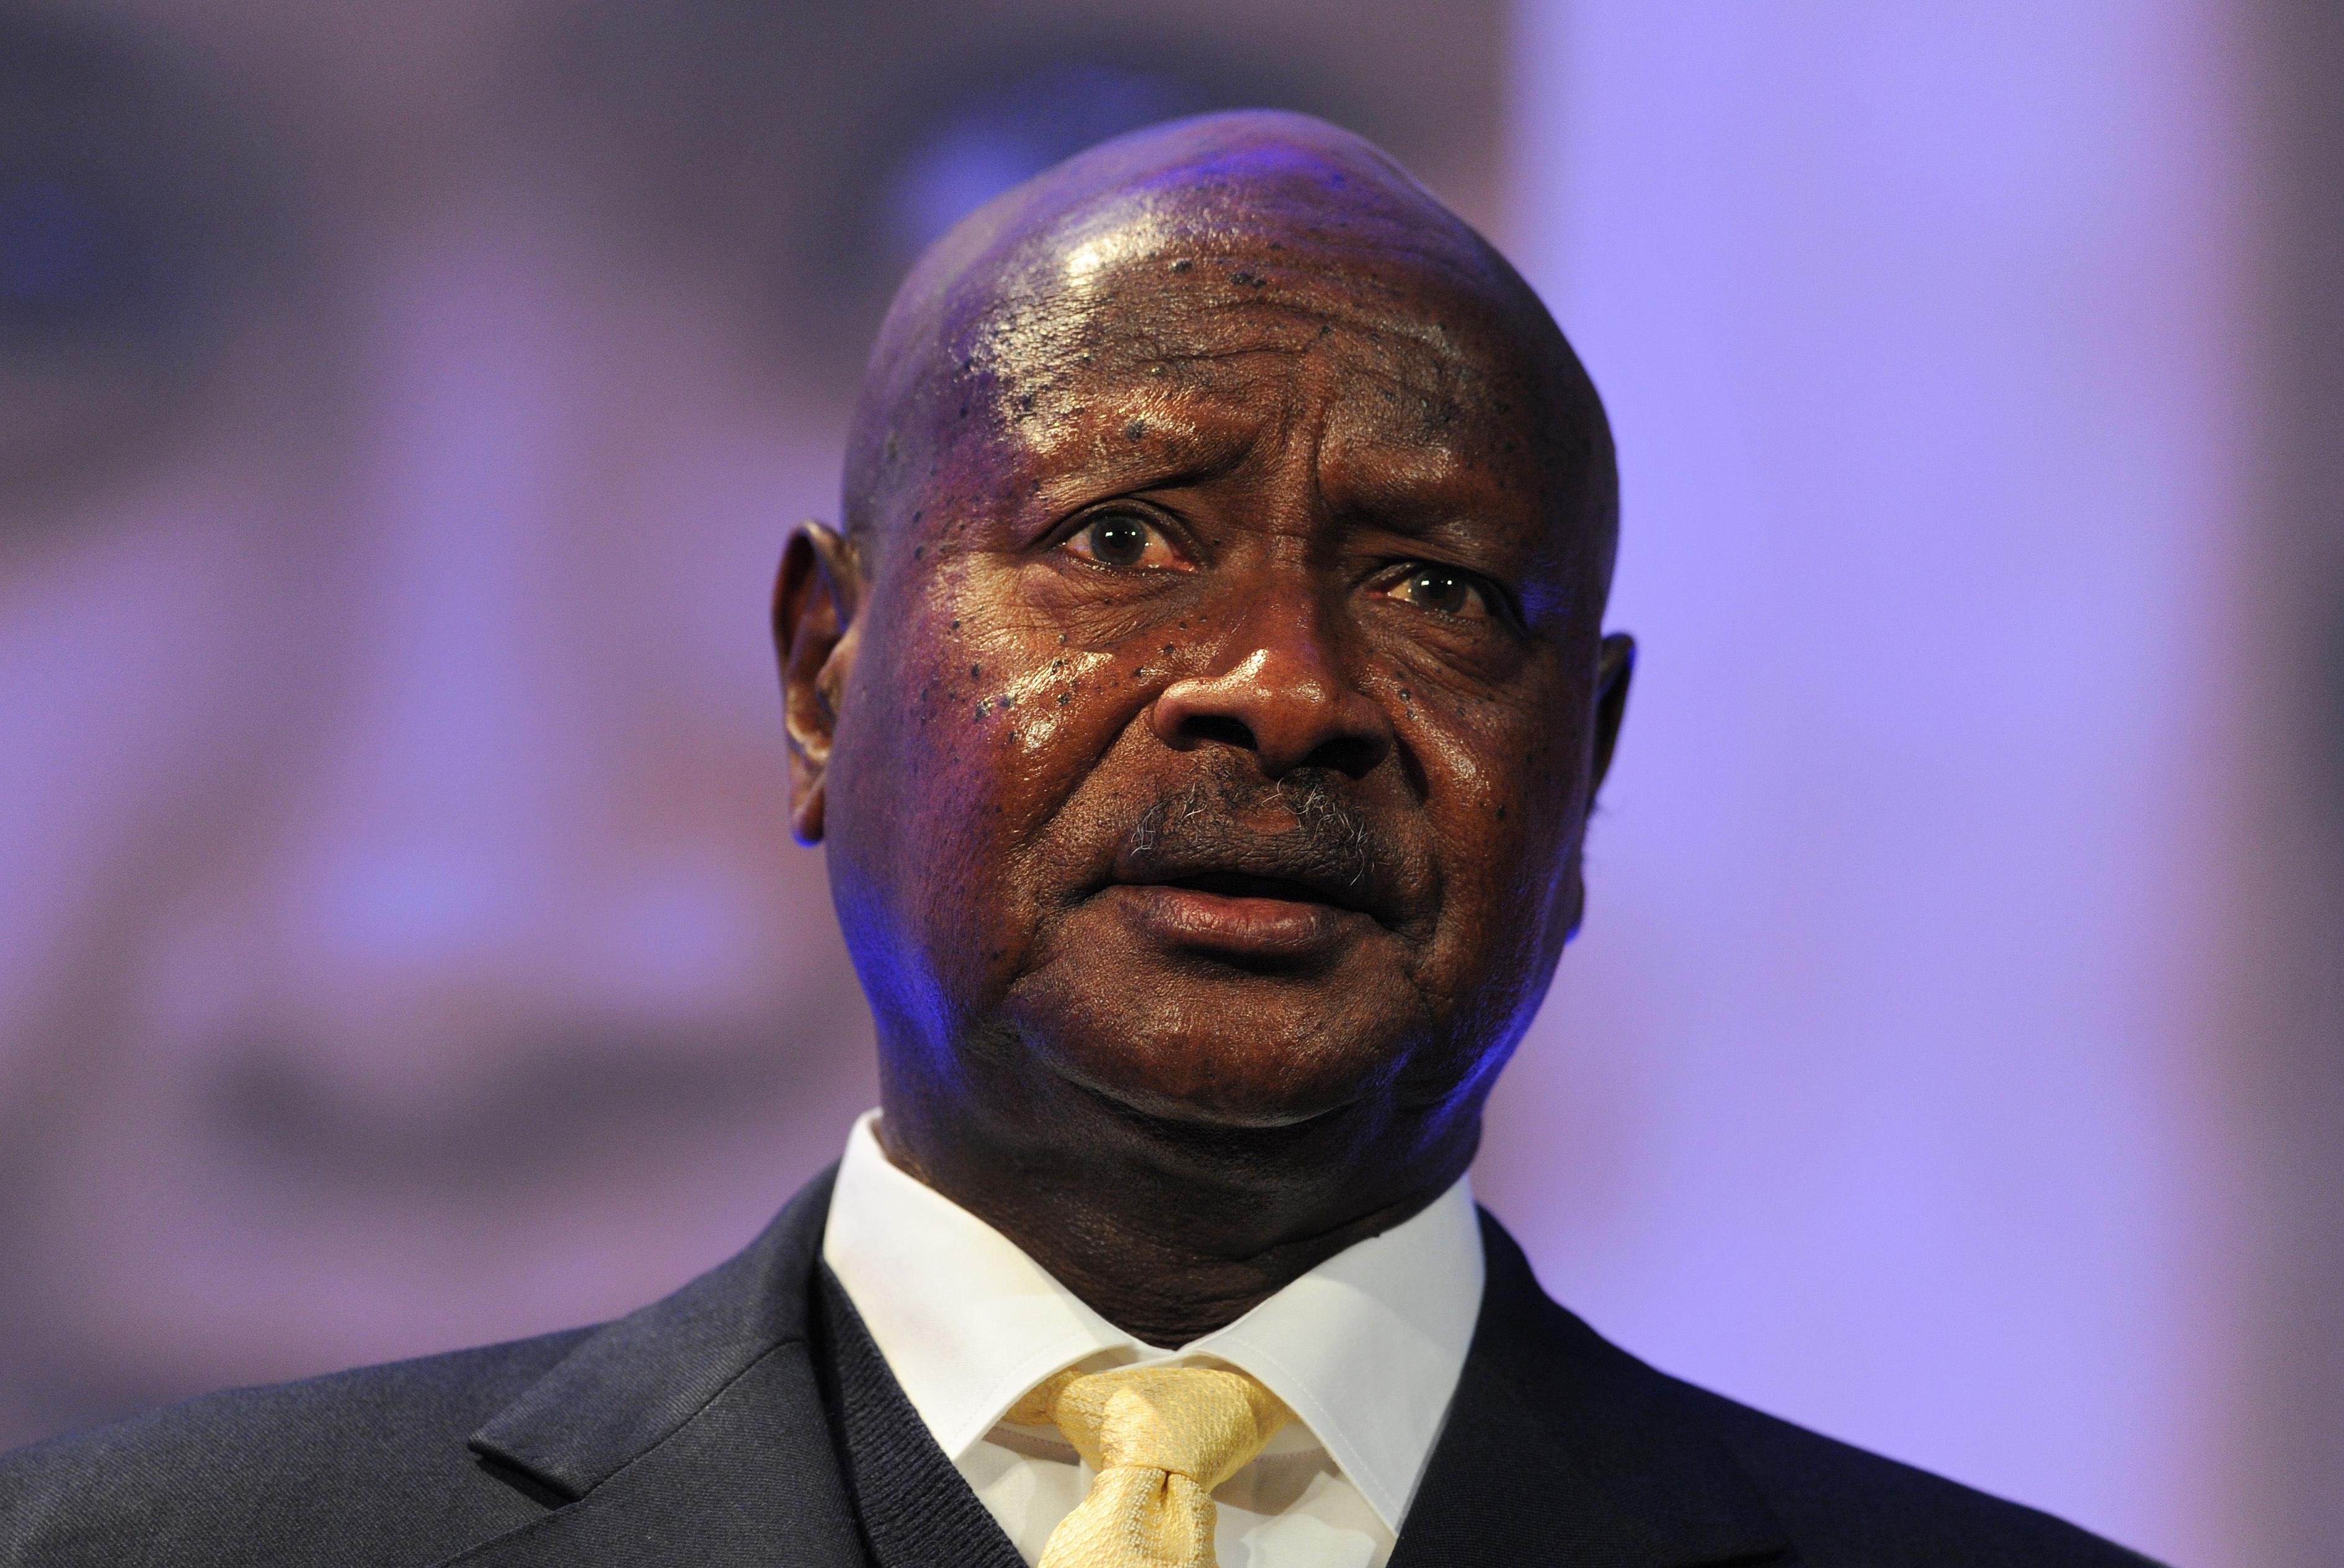 Museveni oo markii toddobaad loo dhaariyay madaxtinimada dalka Uganda